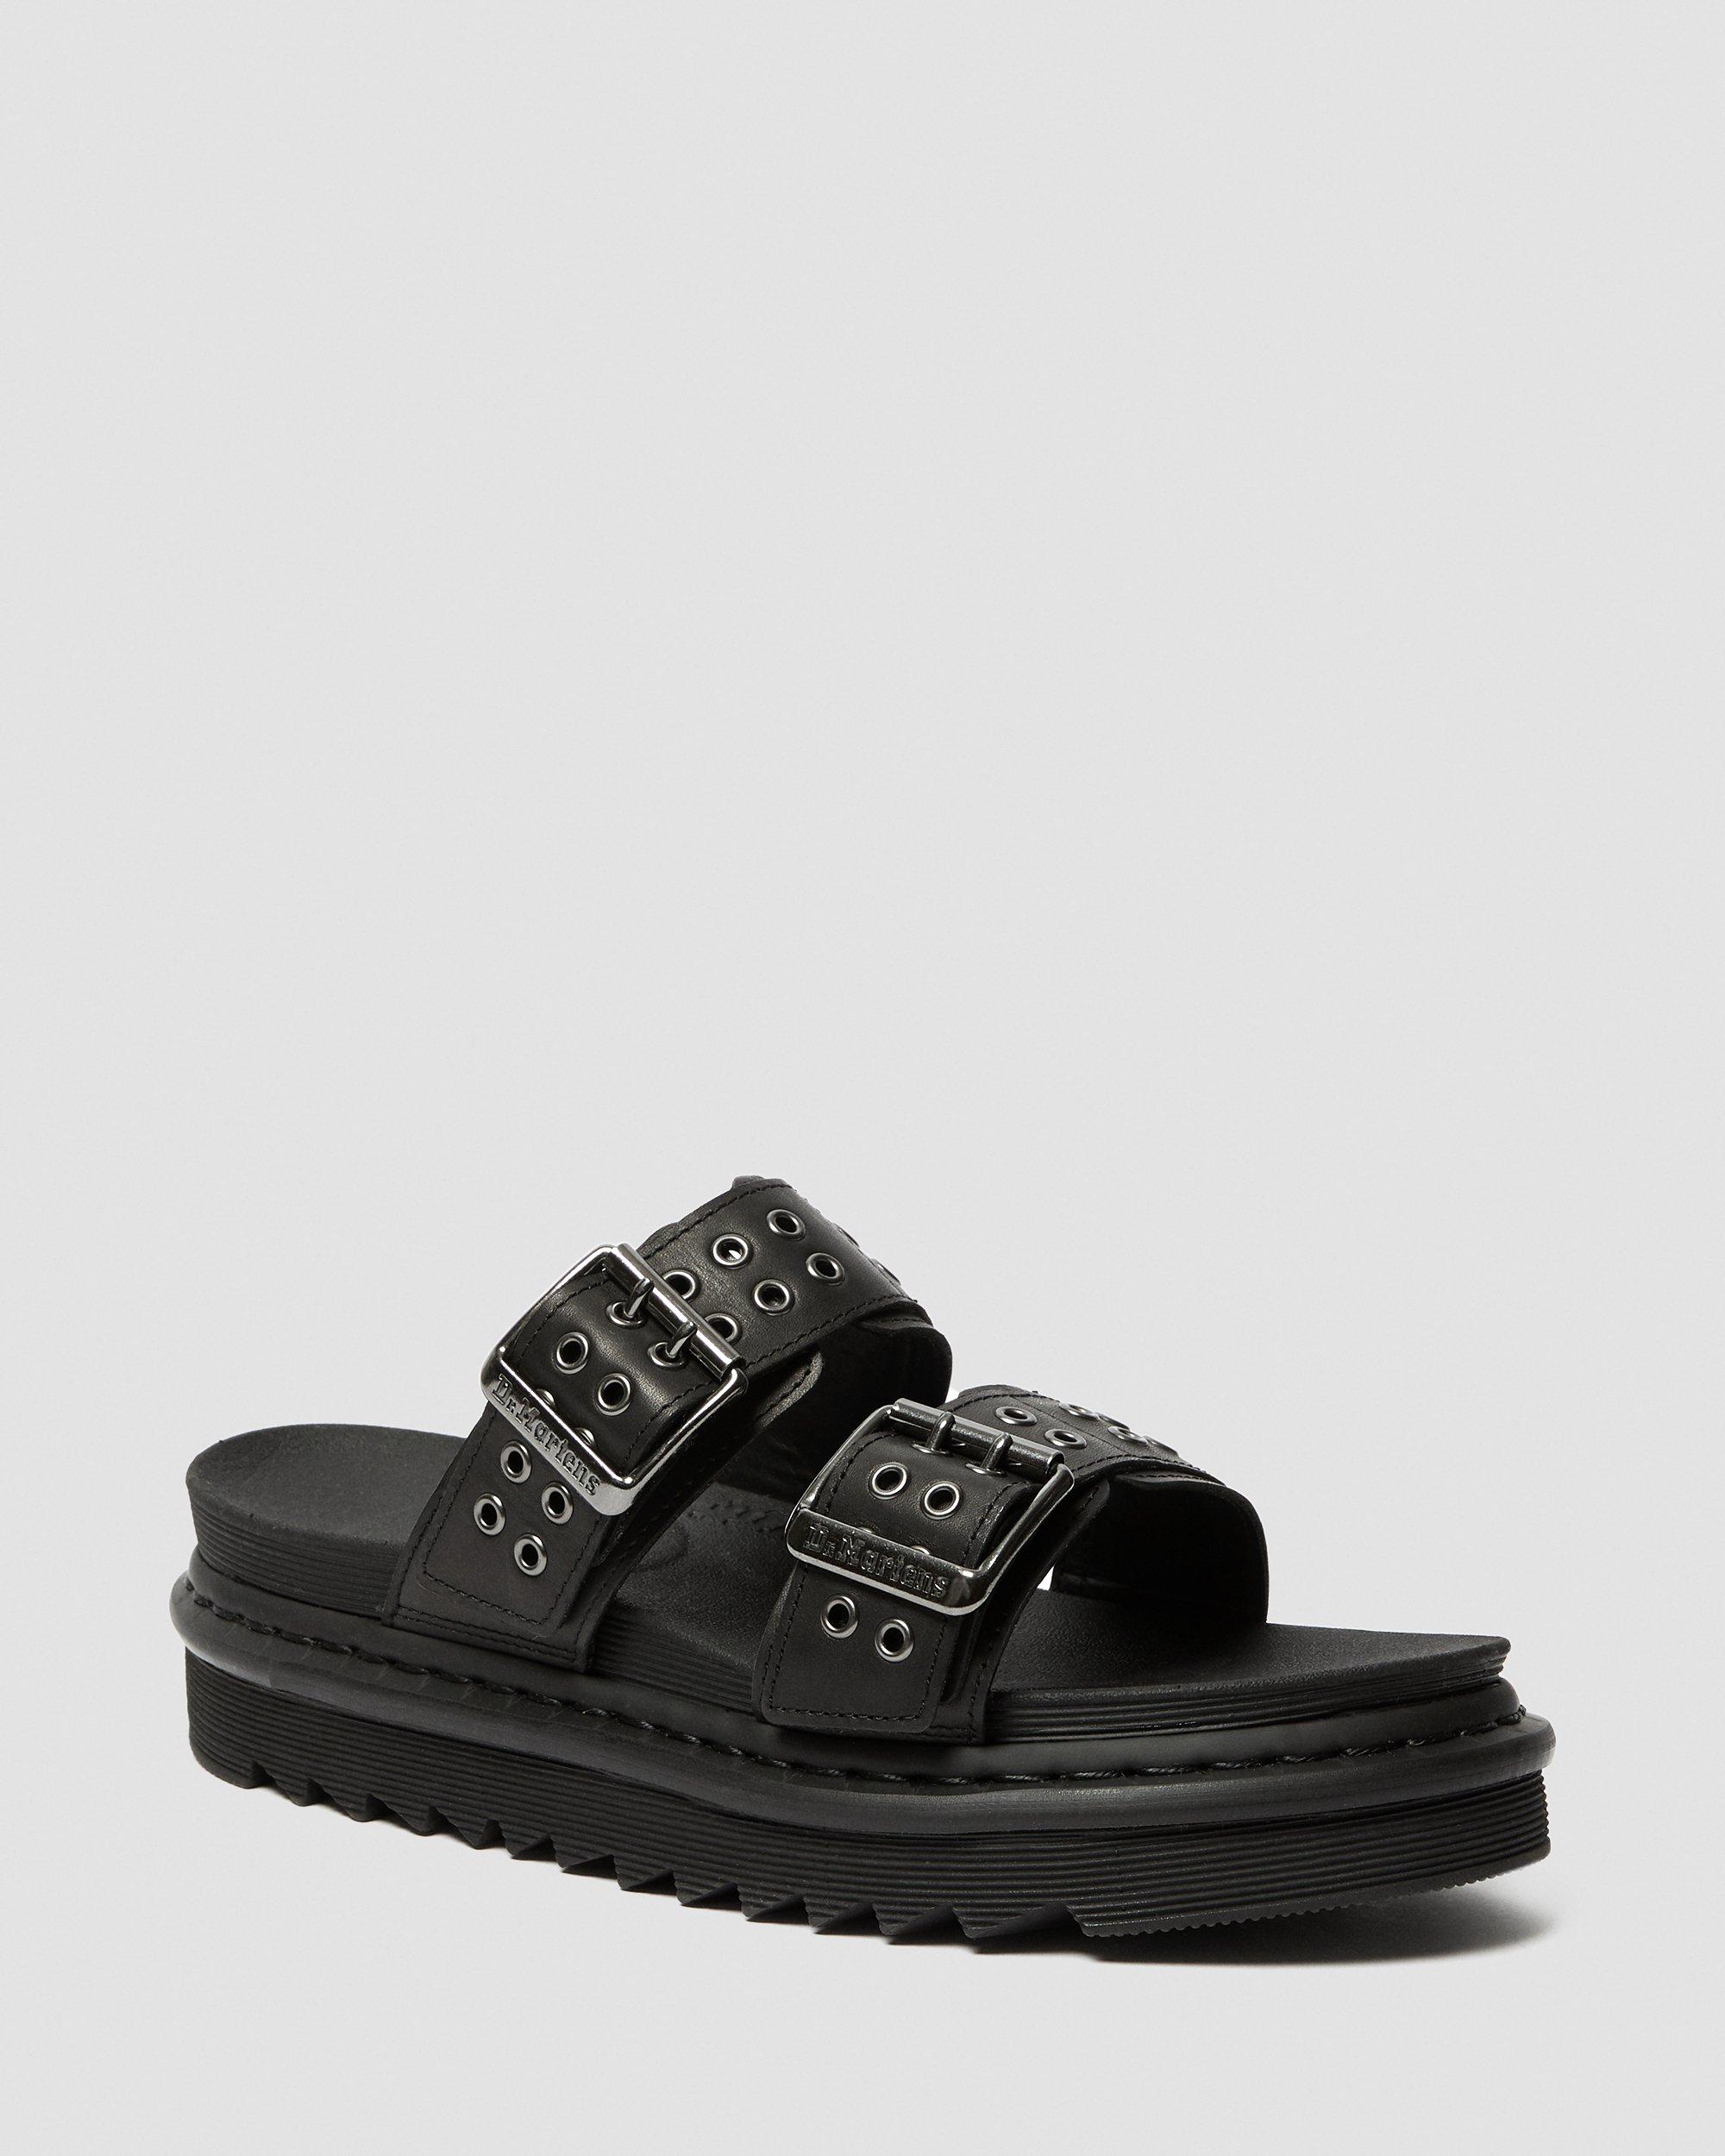 Myles Leather Buckle Slide Sandals in Black | Dr. Martens